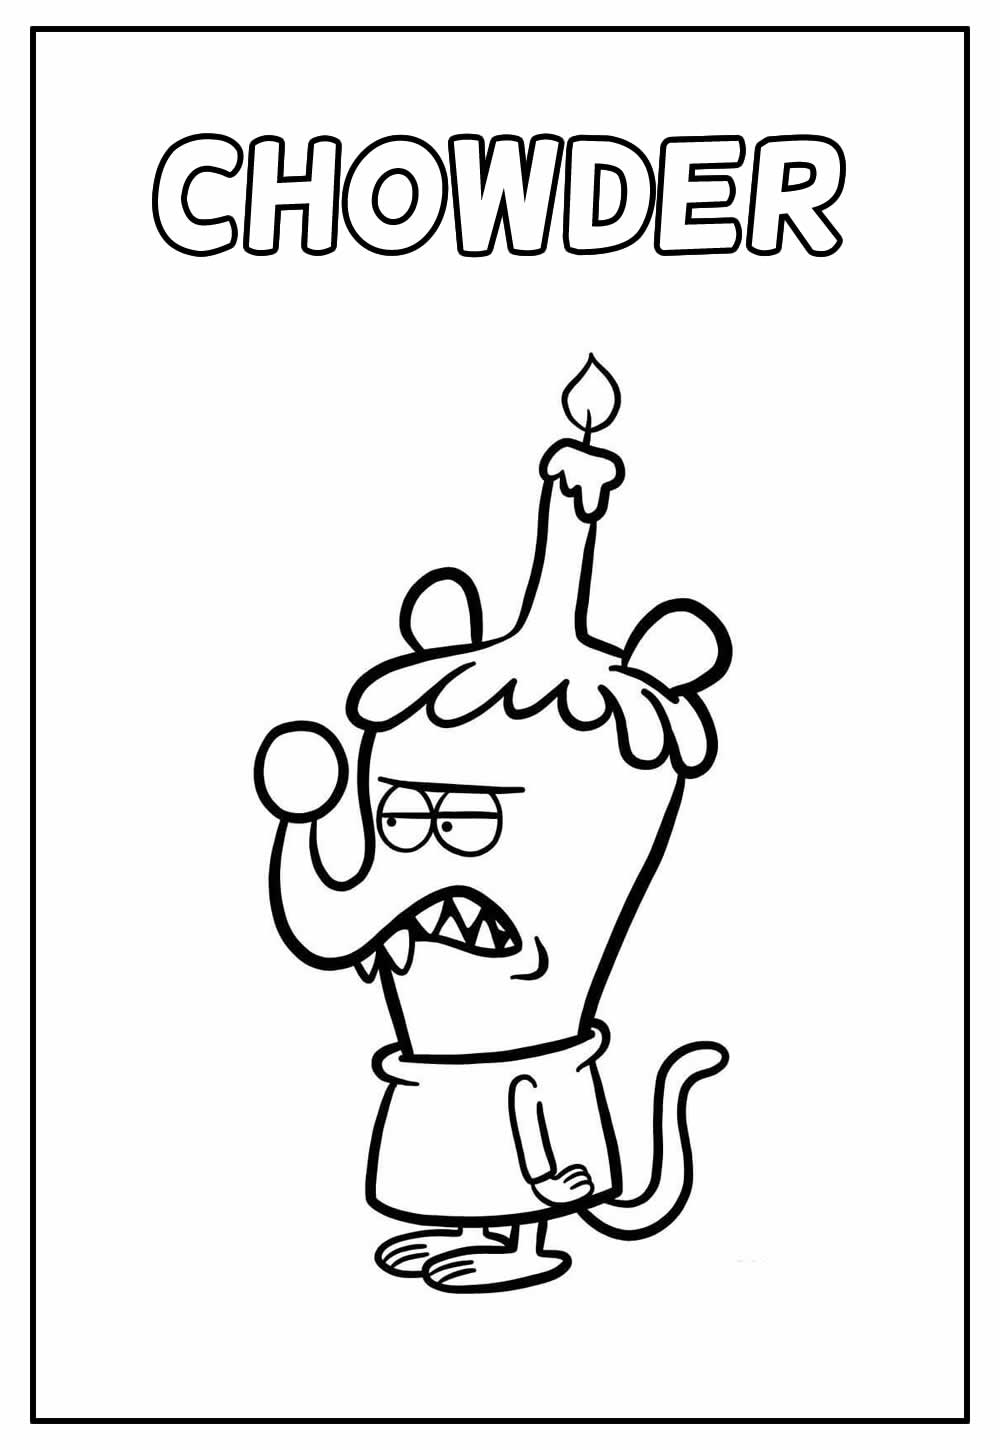 Desenho Educativo do Chowder